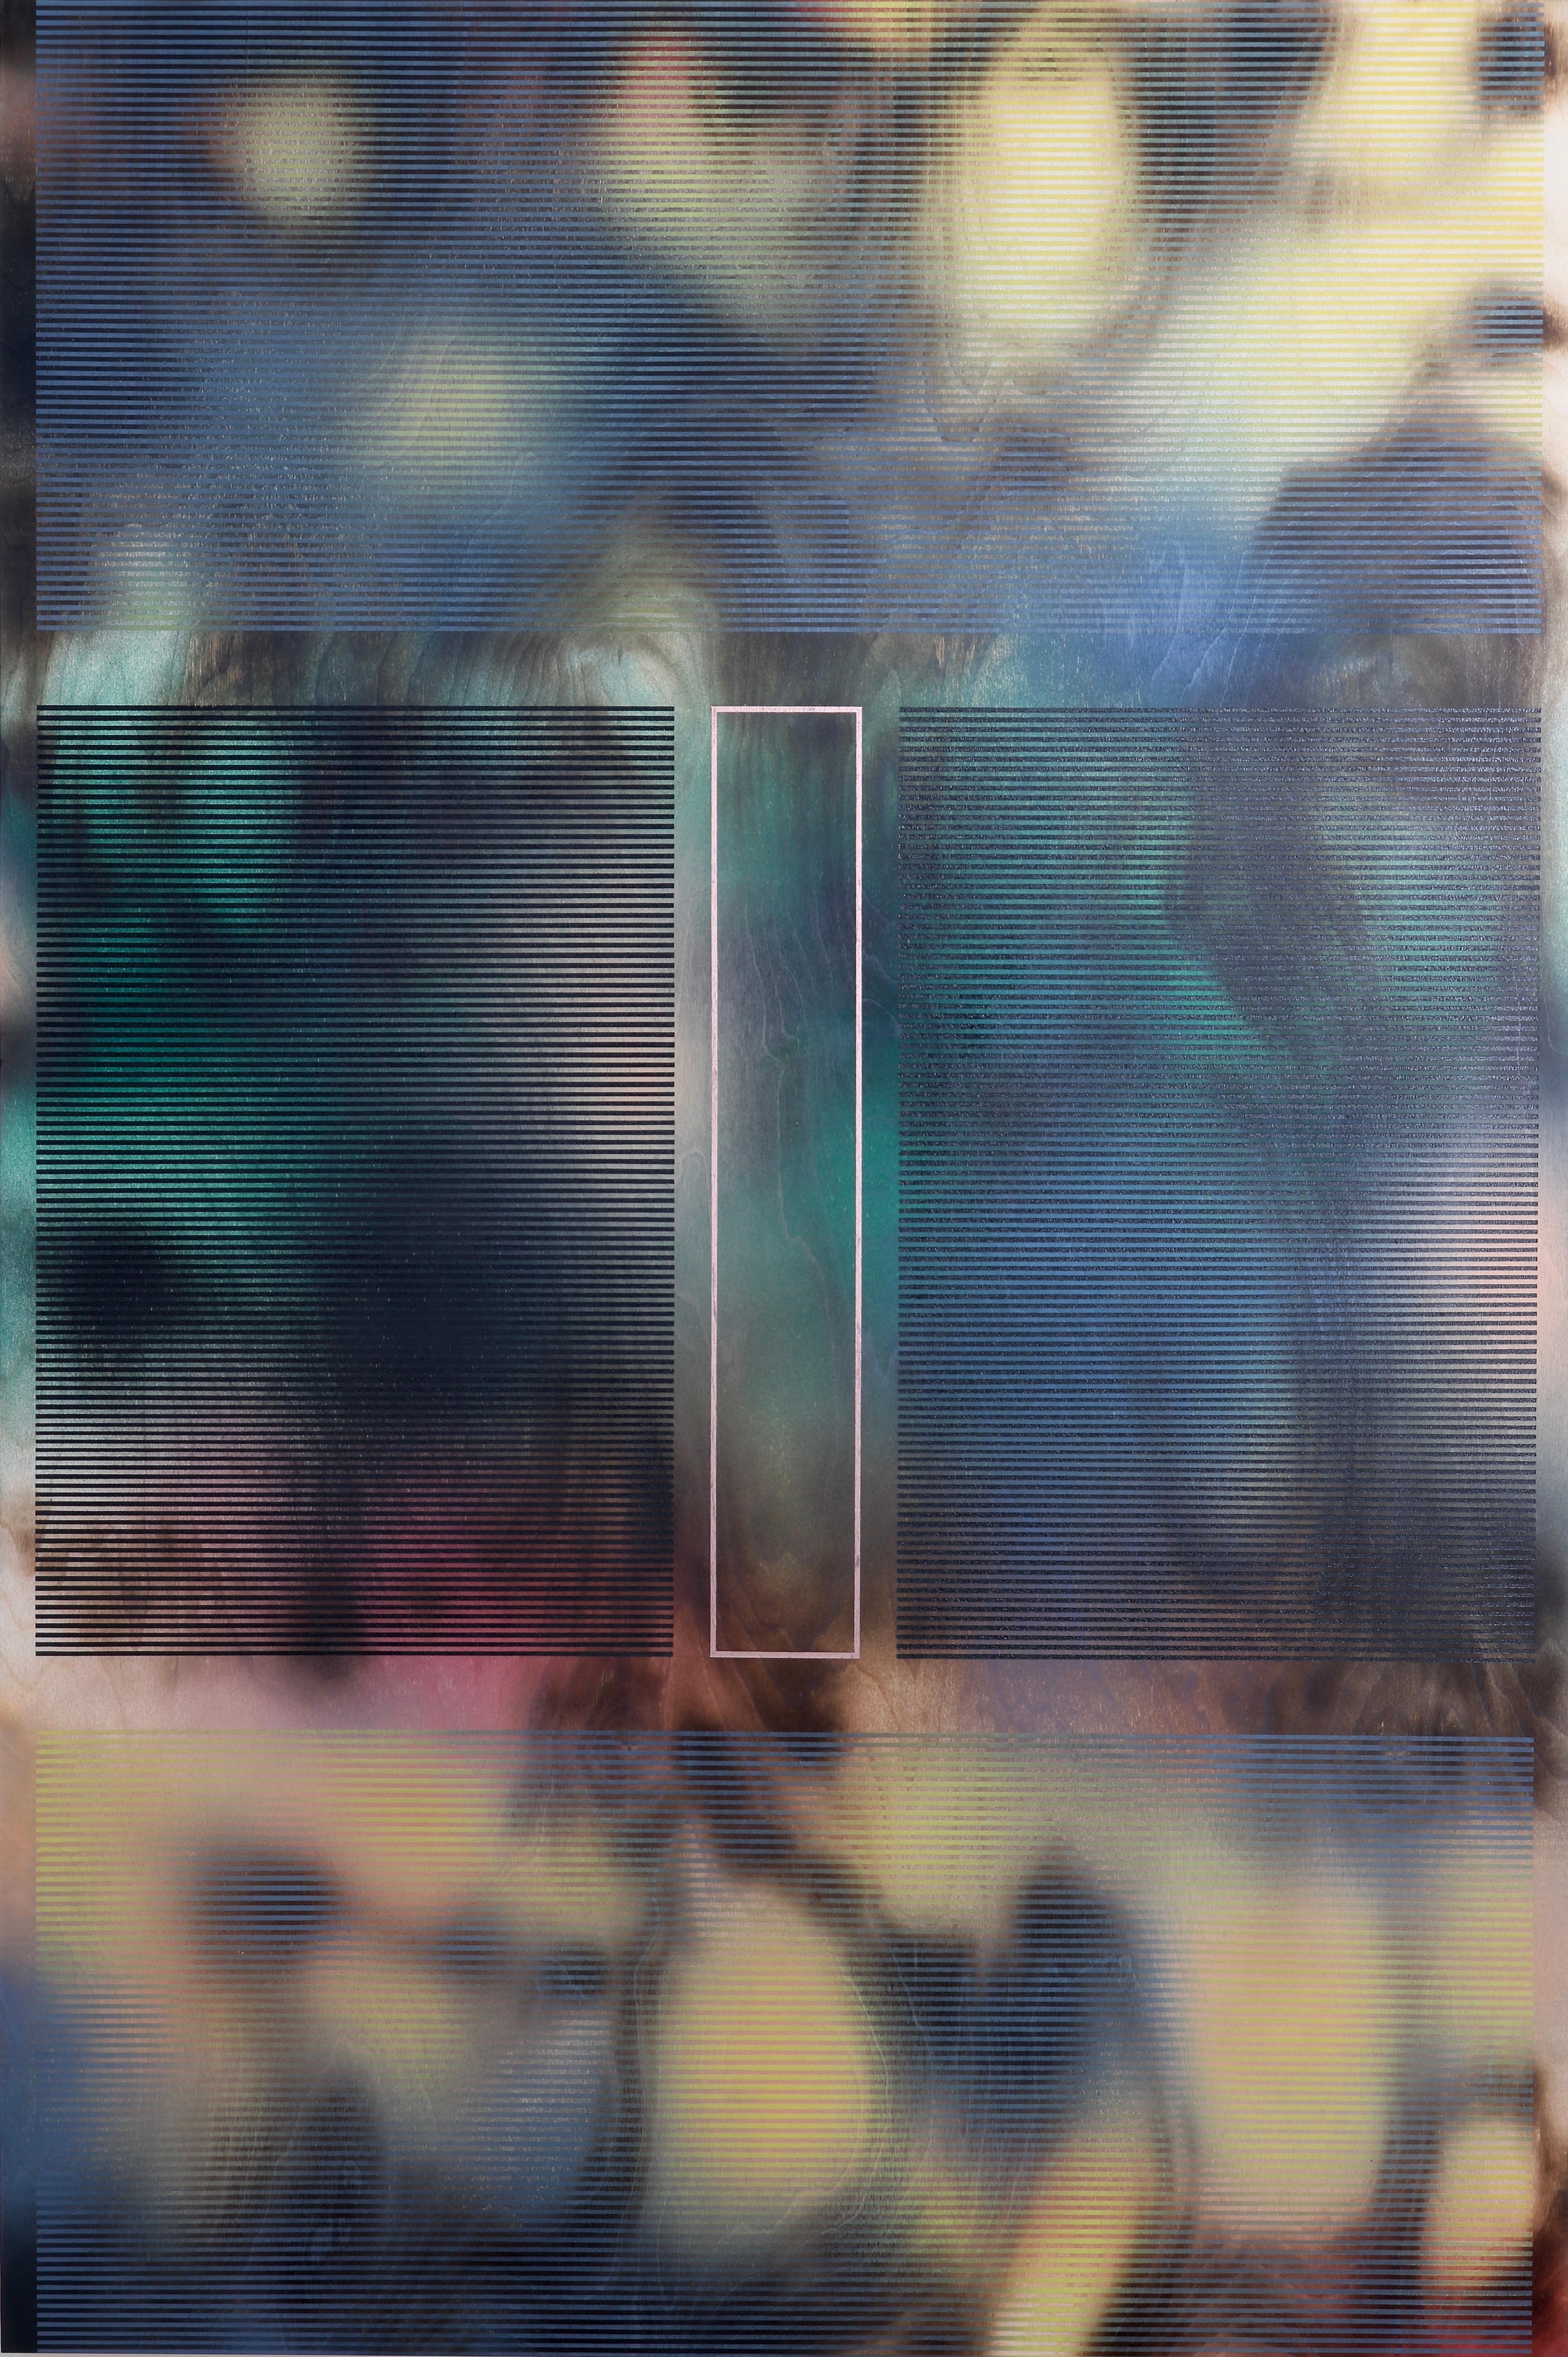 Abstract Painting Melisa Taylor Metzger - d'Ombr 3 (peinture à grille géométrique abstraite, motifs gris optique, jaune, vert)